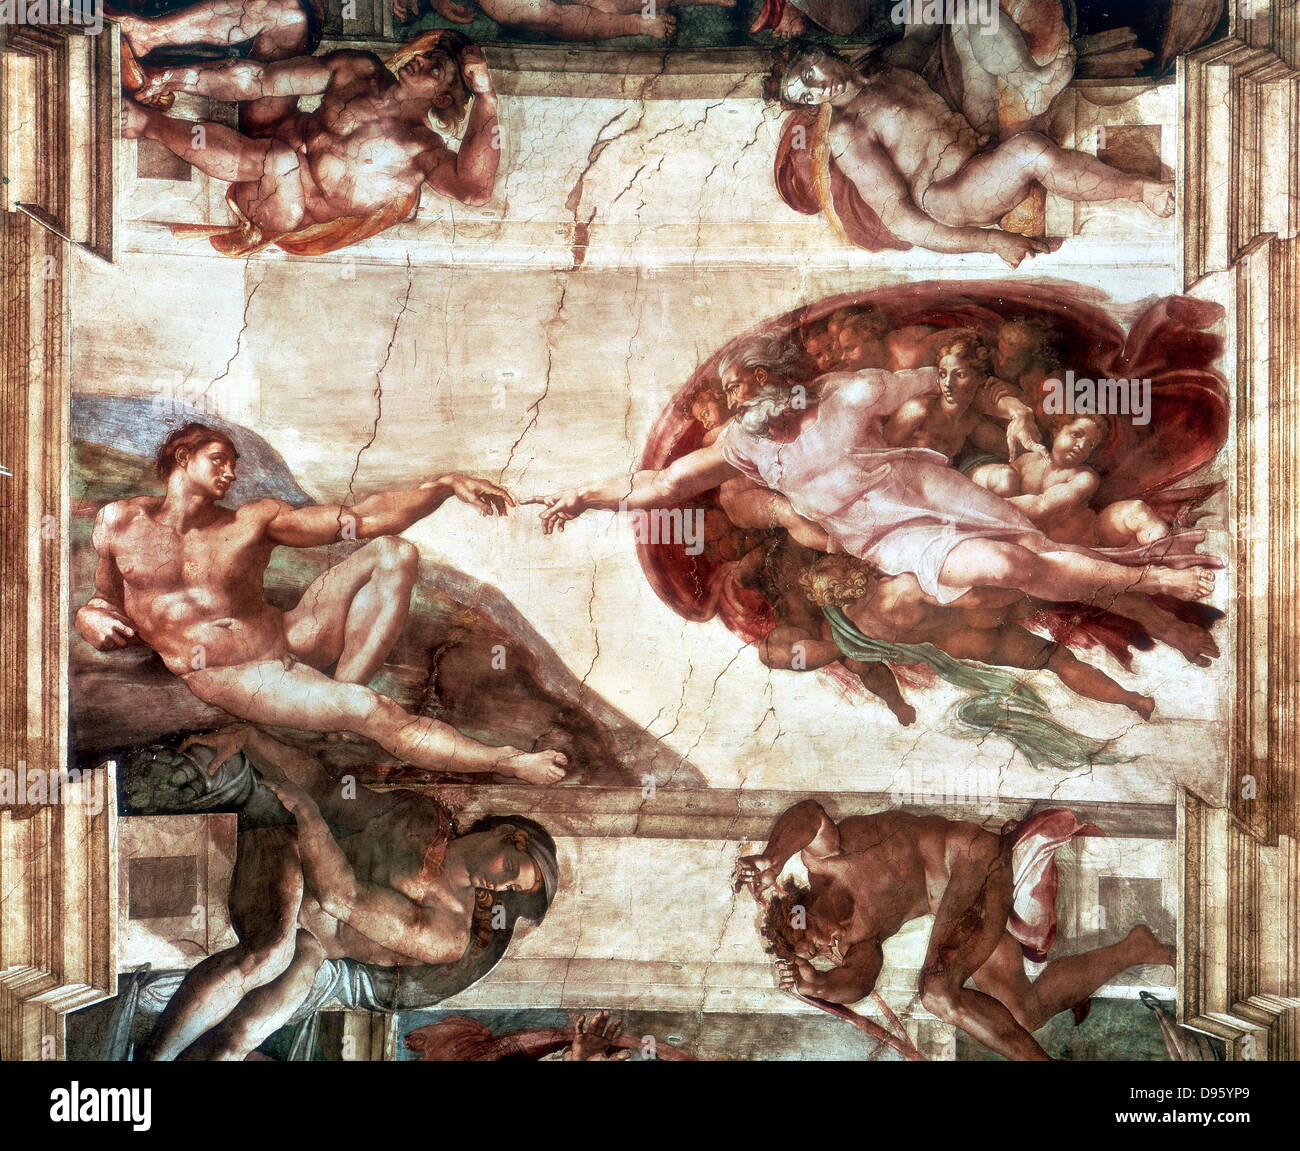 Schaffung von Adam. Decke der Sixtinischen Kapelle, Vatikan (Pre-Wiederherstellung).   Michelangelo (1475-1564). Stockfoto